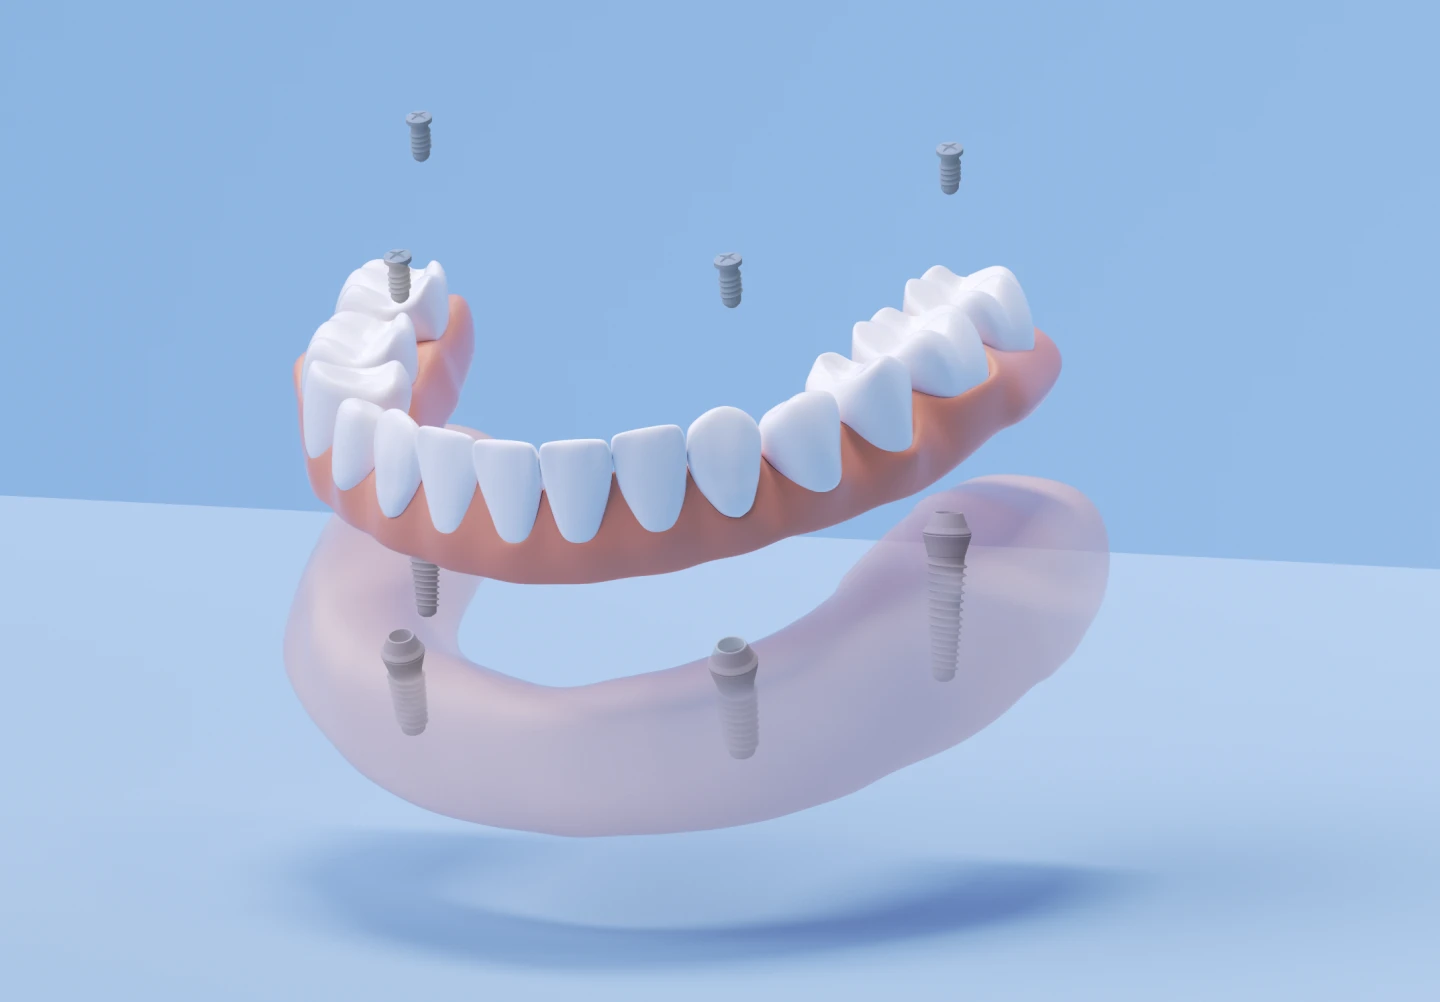 Aspen Dental All on 4 dental implants. 